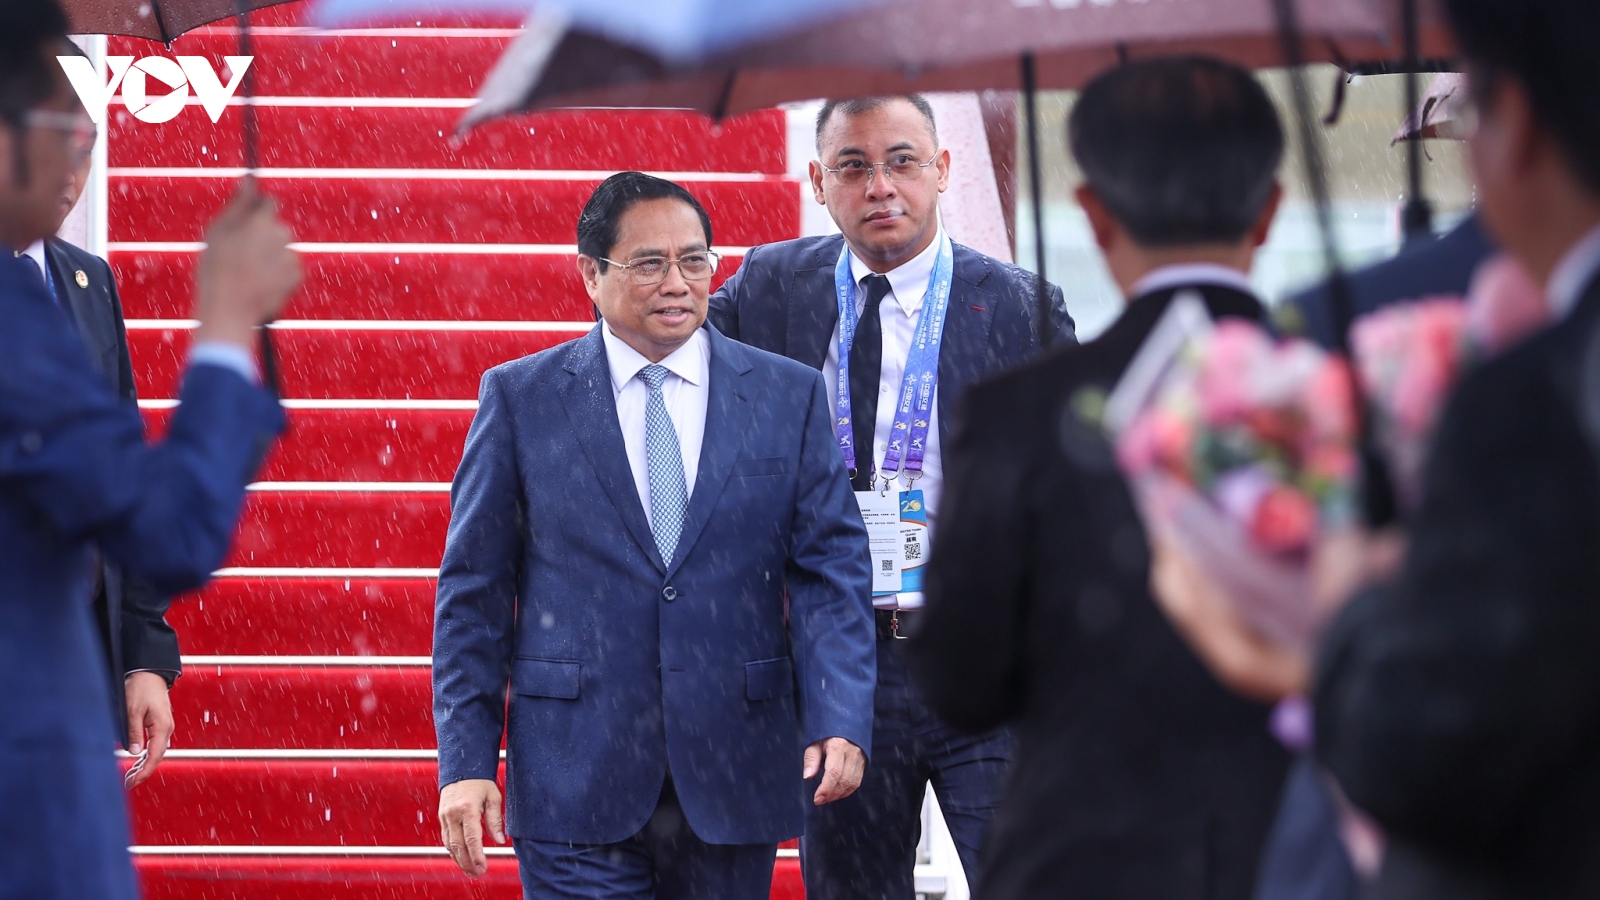 Thủ tướng đến Quảng Tây bắt đầu tham dự các hoạt động giữa ASEAN và Trung Quốc